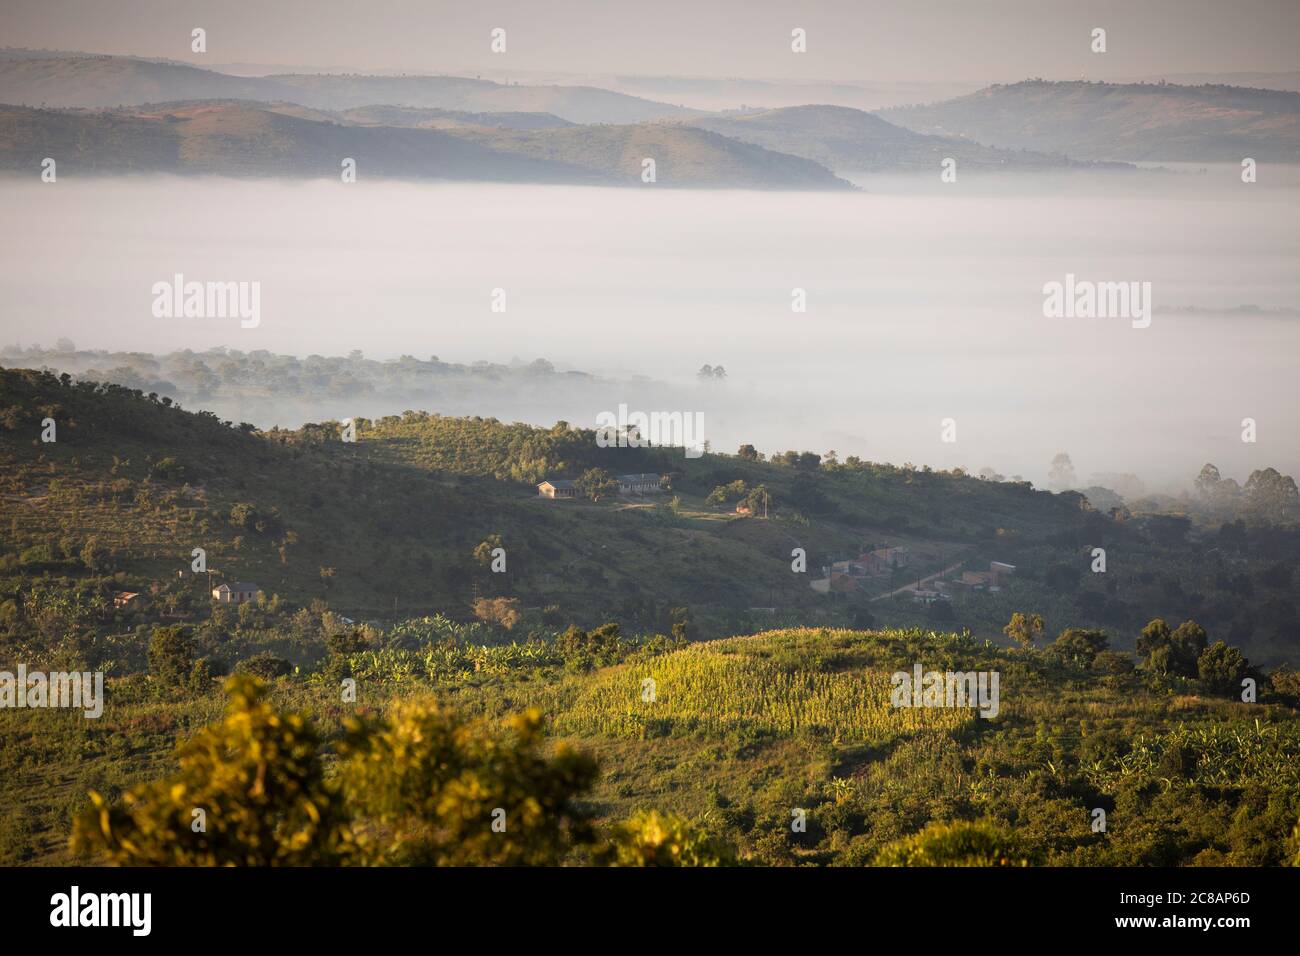 Le brouillard enveloppe une vallée sous les collines ondulantes et les communautés du district de Lyantonde, en Ouganda, en Afrique de l'est. Banque D'Images